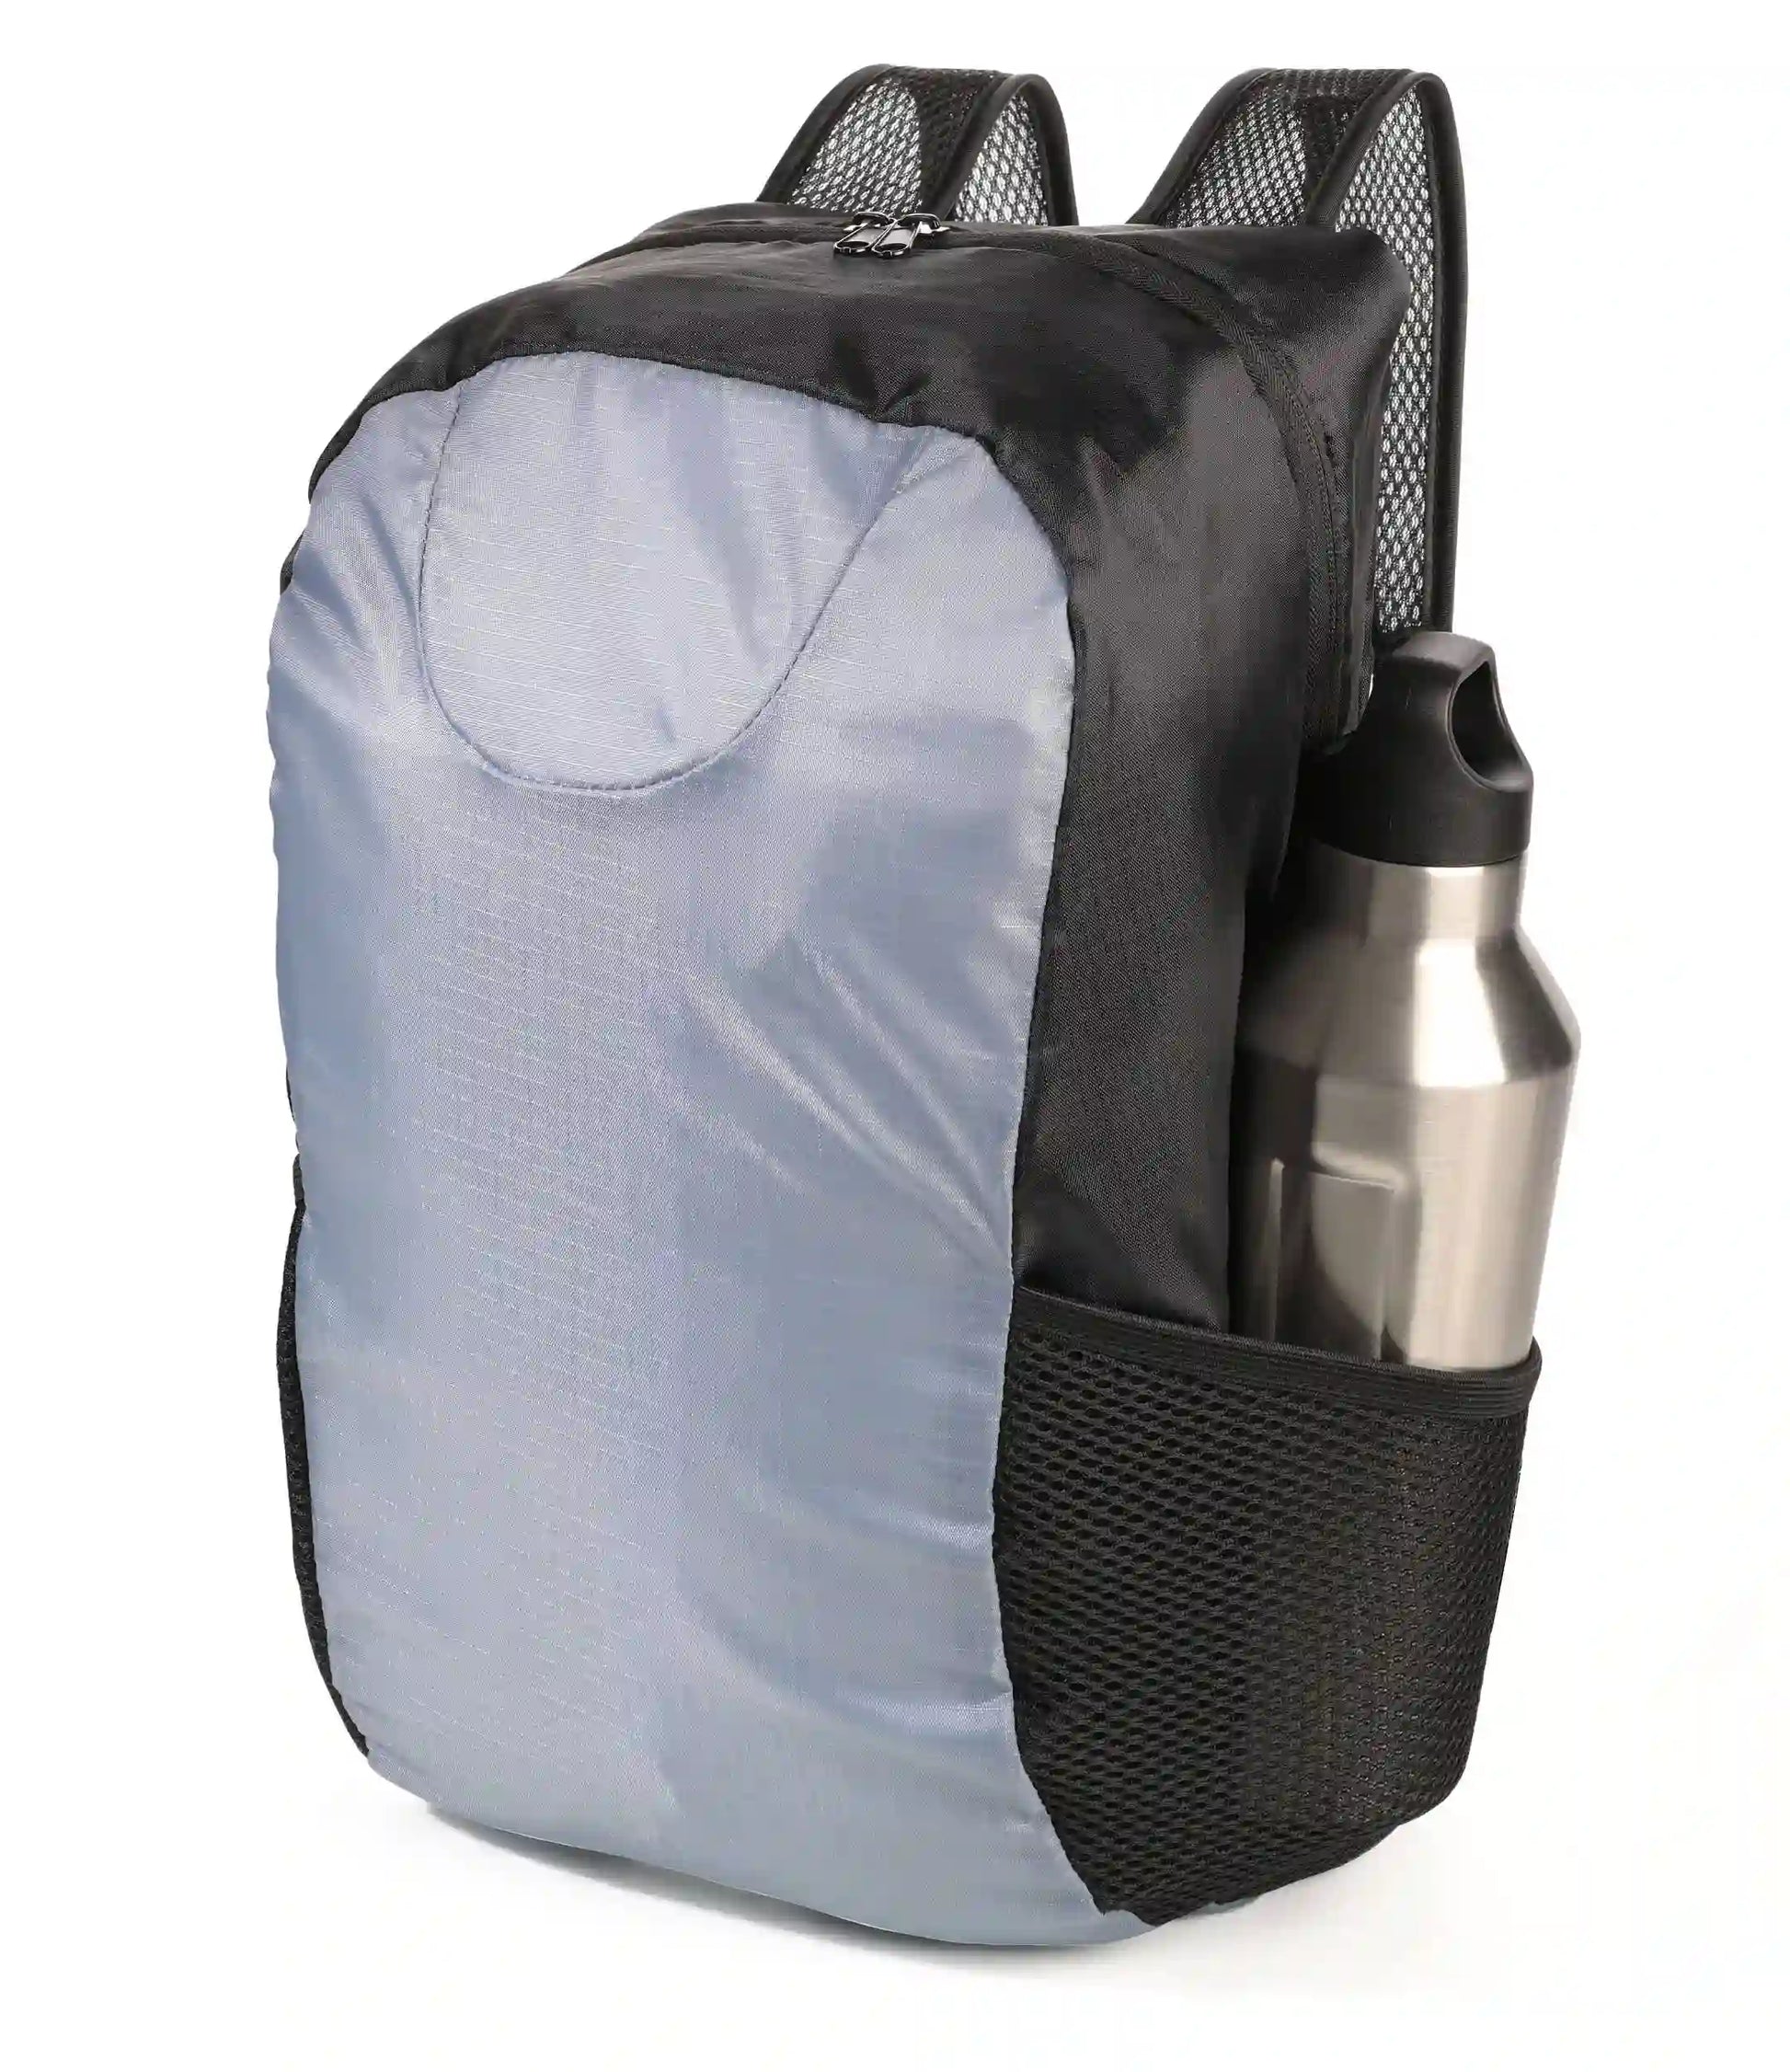 Sammenleggbar ryggsekk i grå farge med en vannflaske